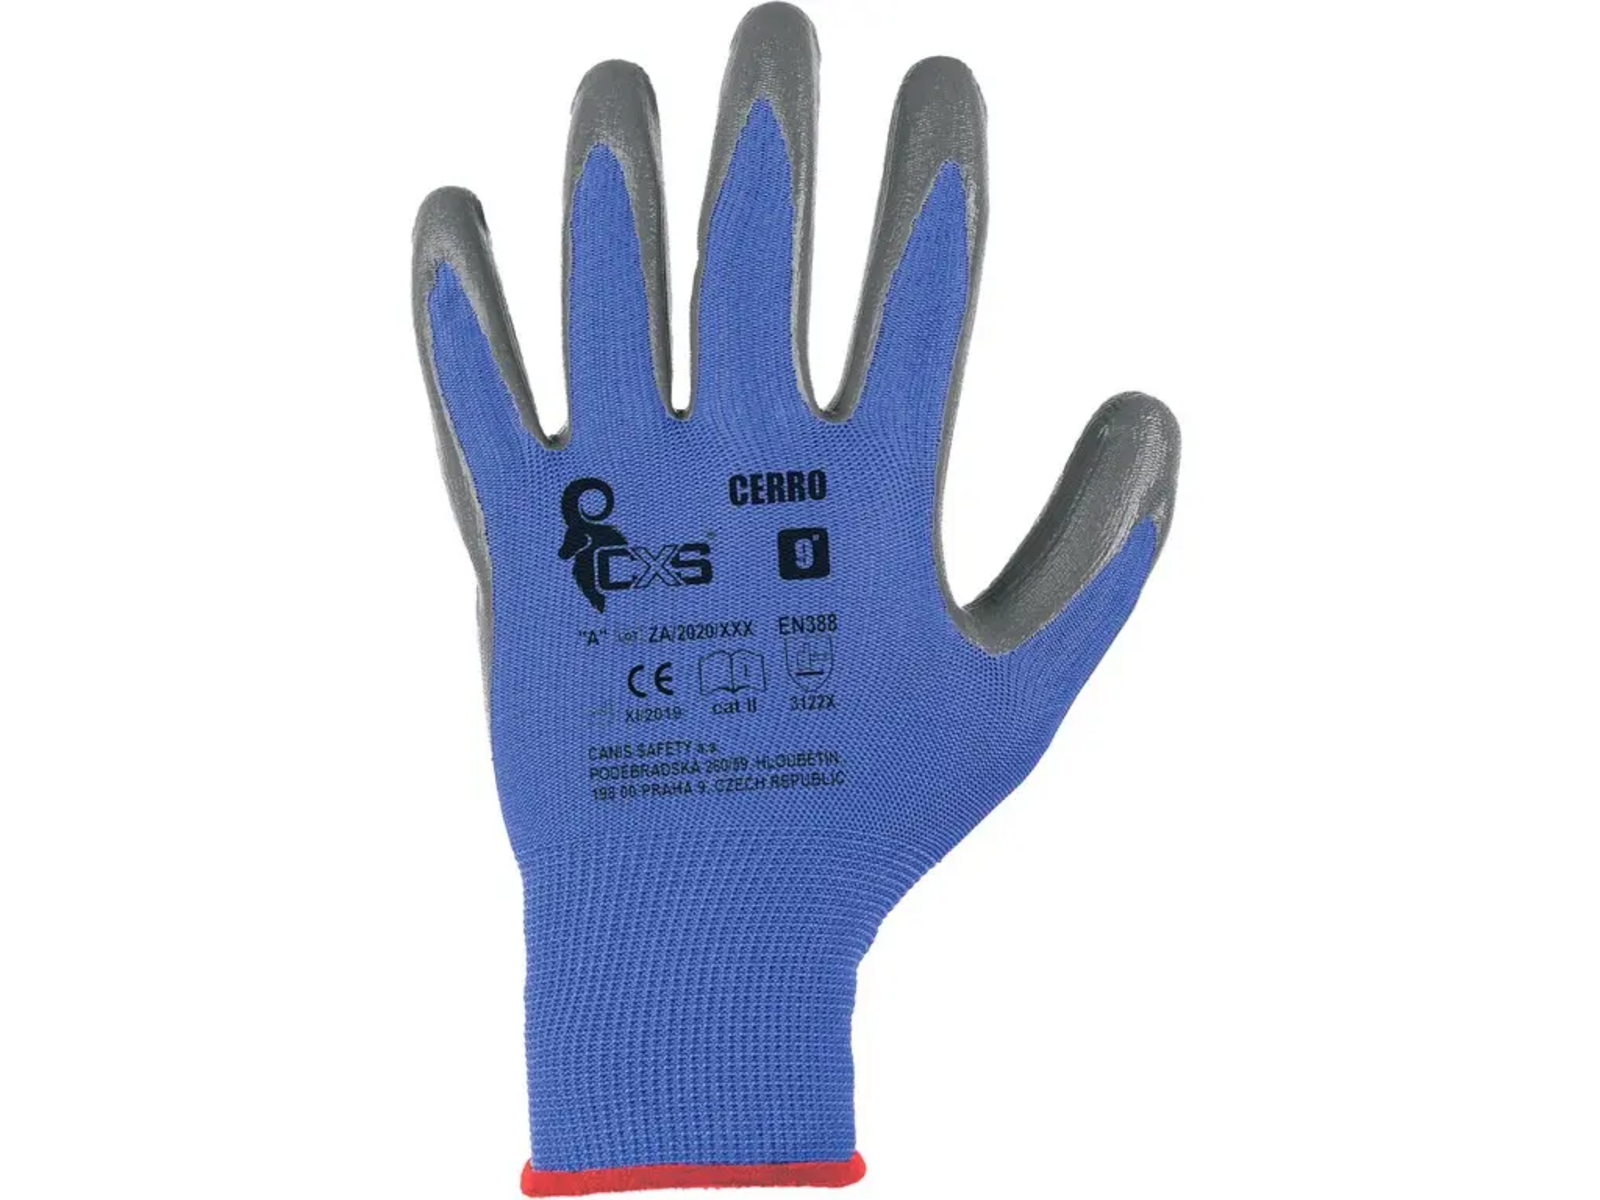 Povrstvené rukavice CXS Cerro - veľkosť: 6/XS, farba: modrá/sivá